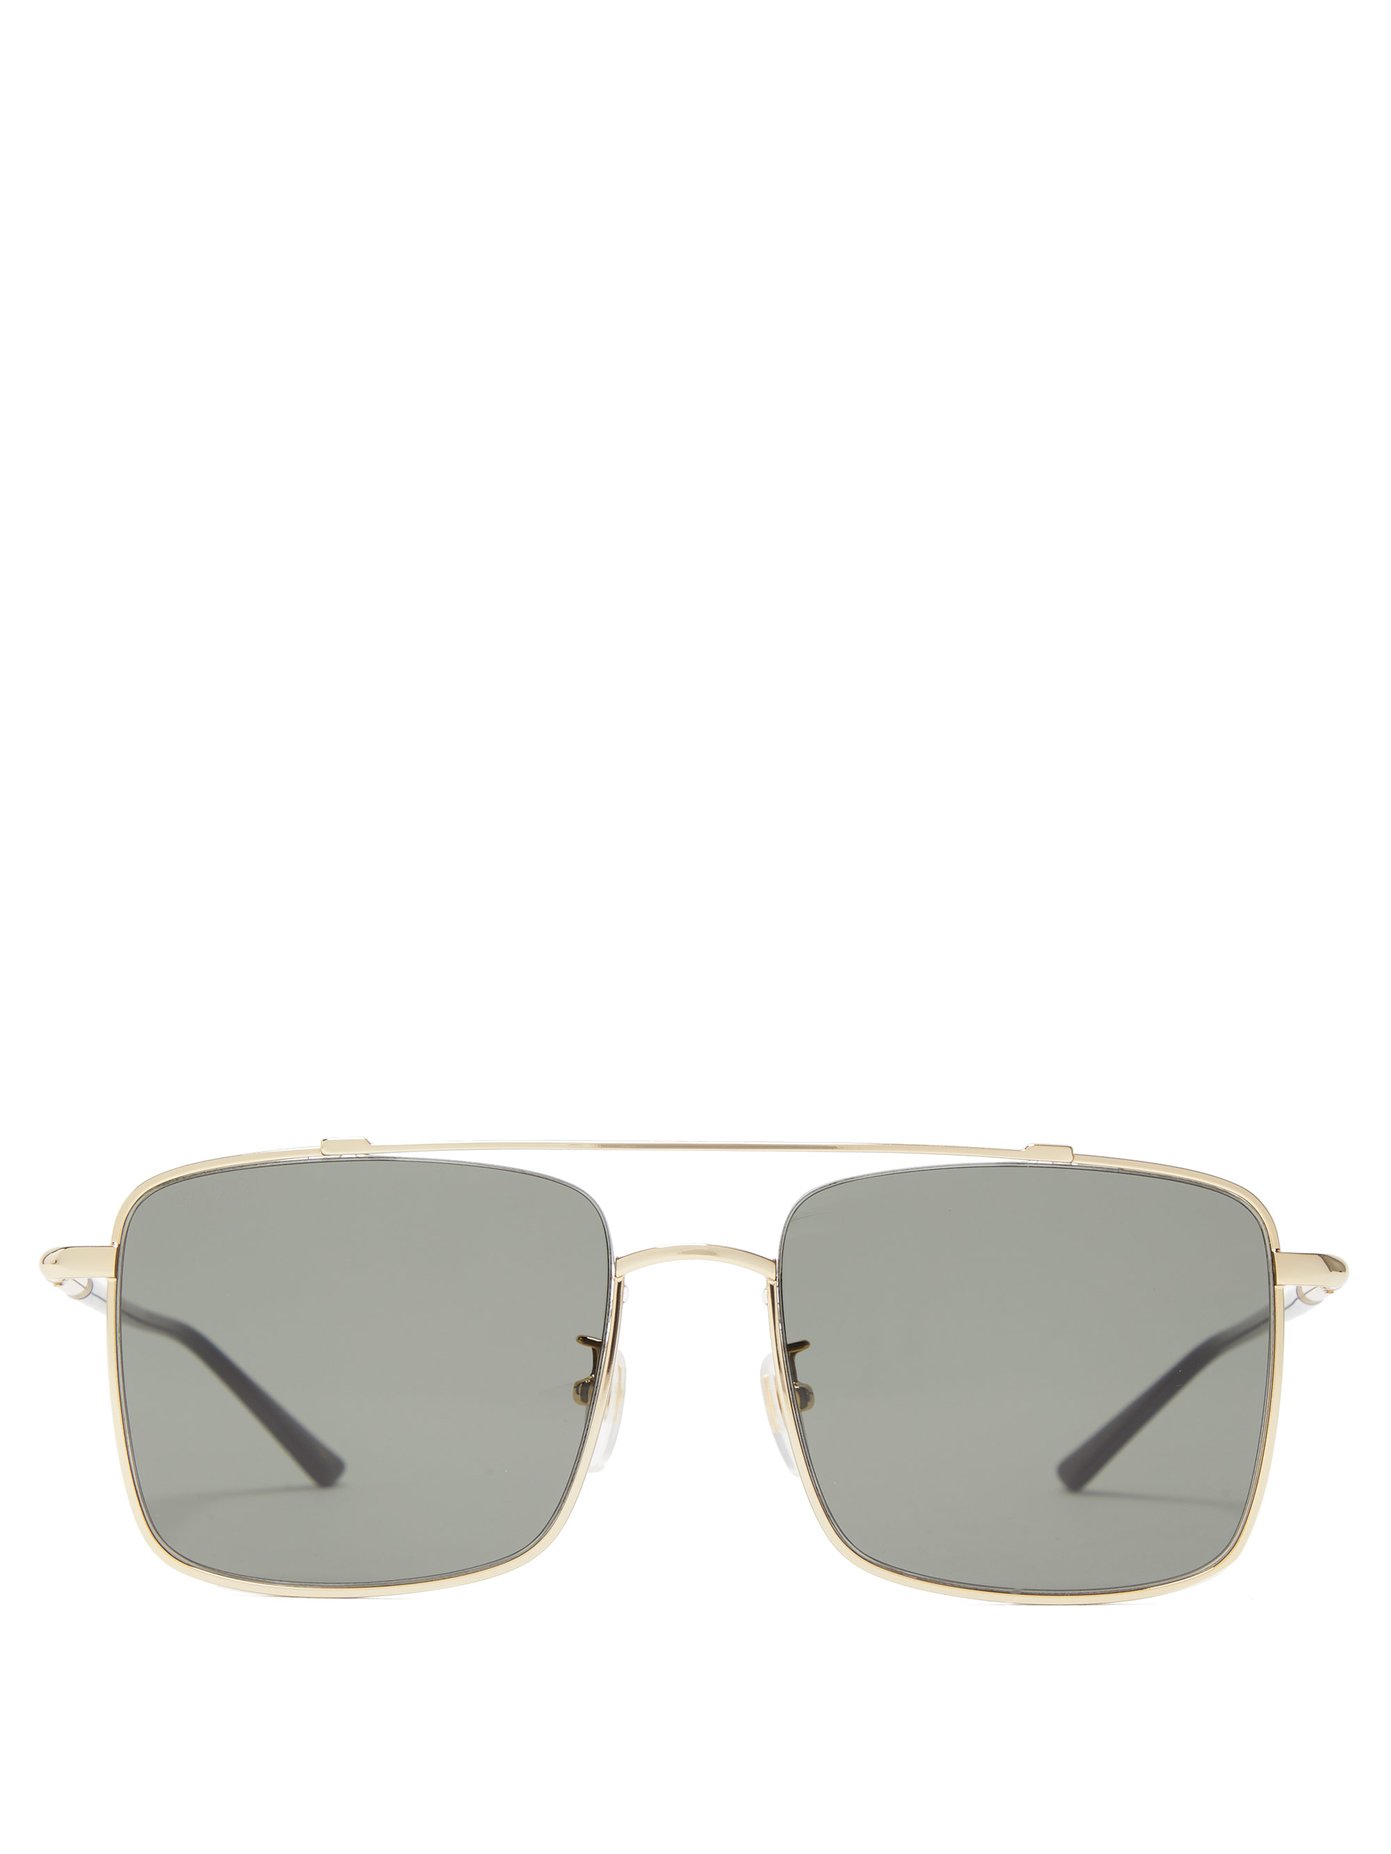 gucci square metal sunglasses